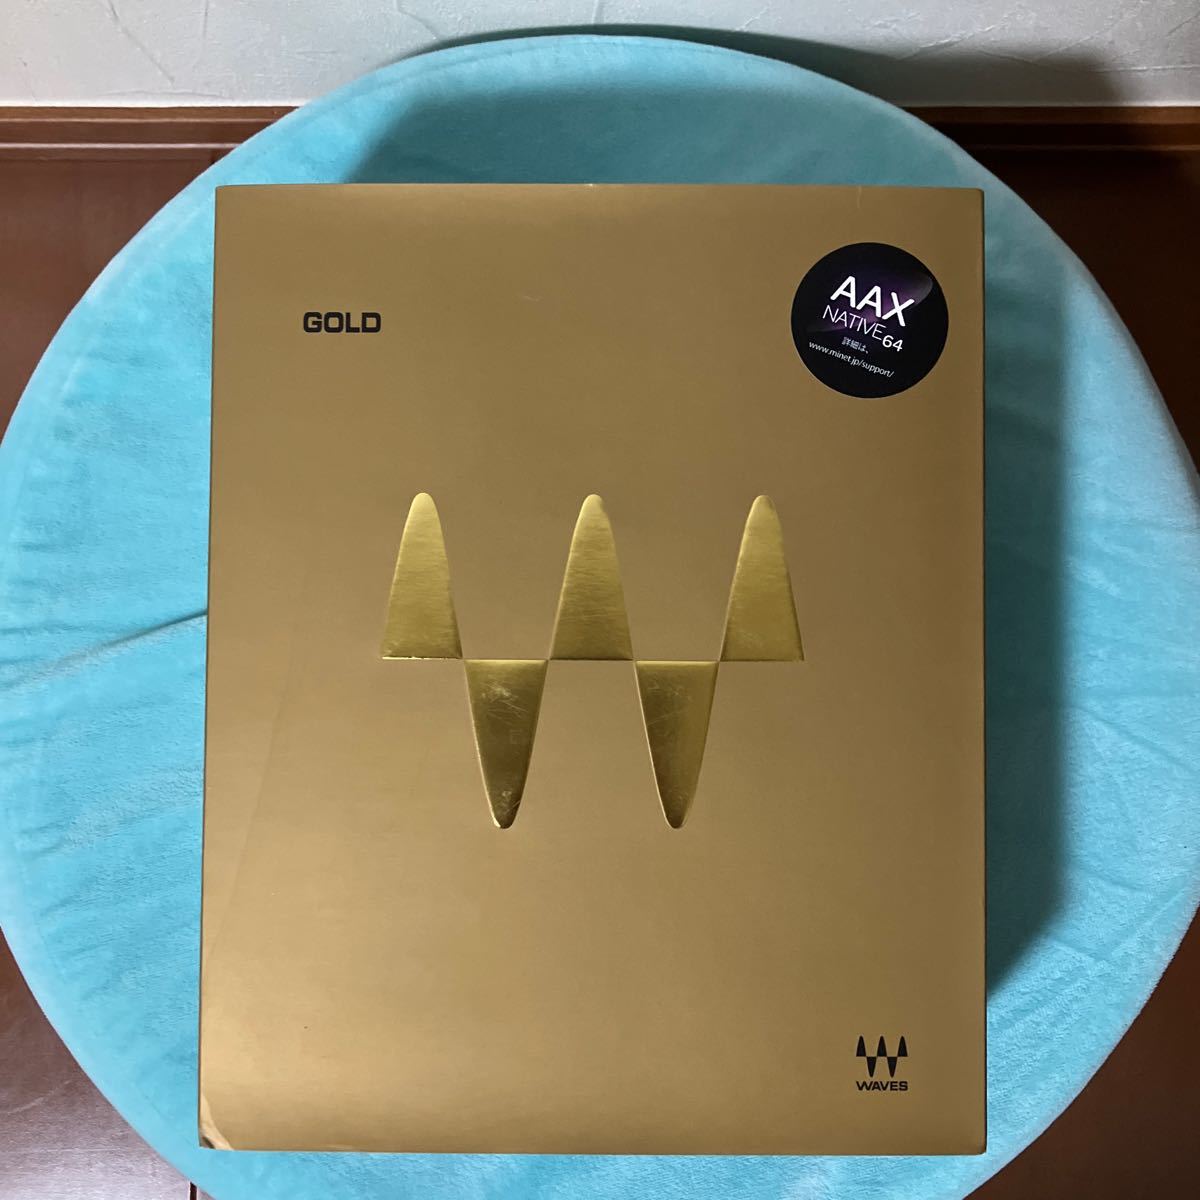  новый товар *Waves Gold*Native* упаковка версия * плагин * Япония стандартный товар 